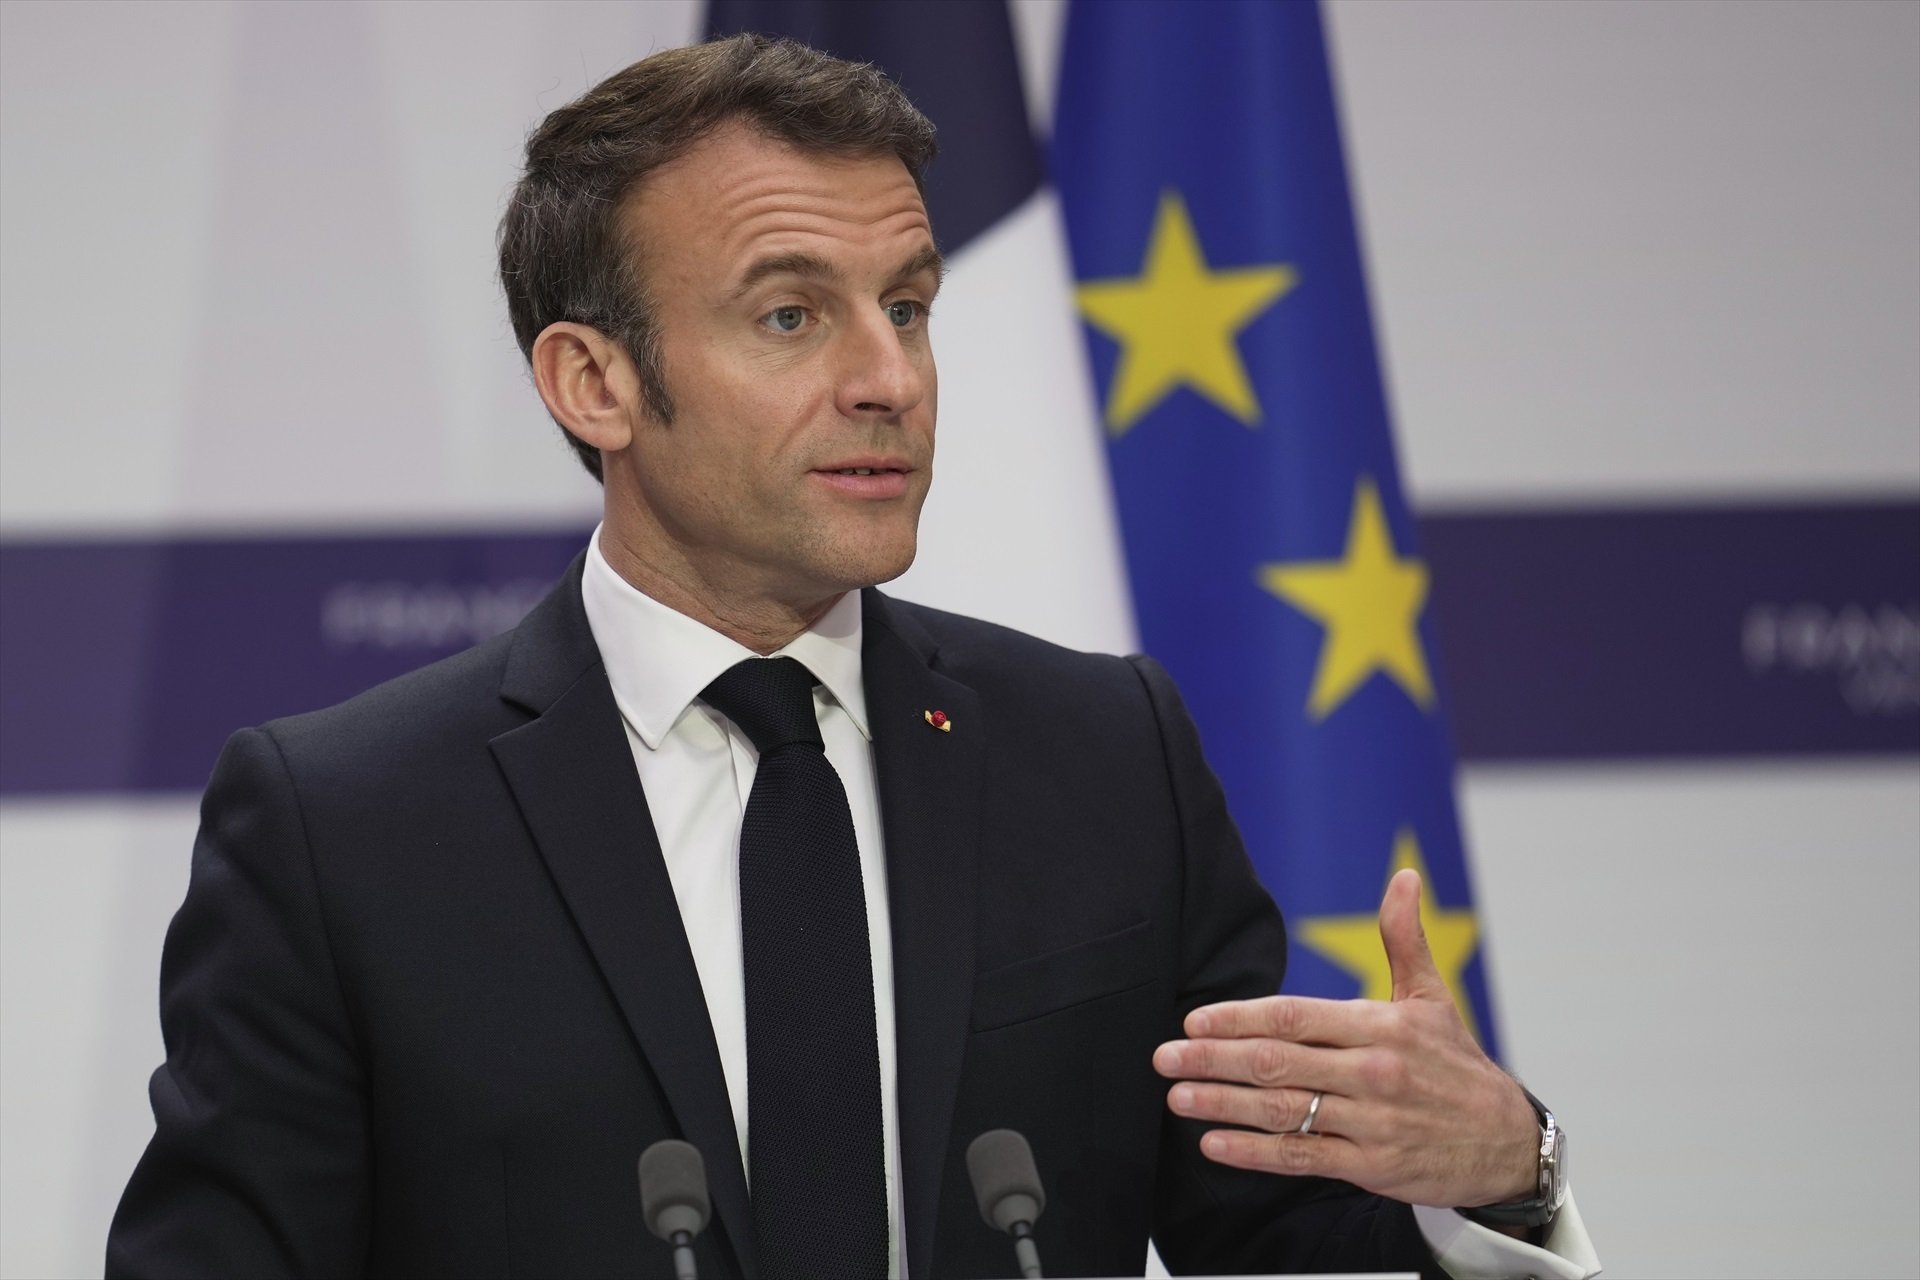 Fracasa la moción de censura contra el gobierno de Macron por la reforma de las pensiones